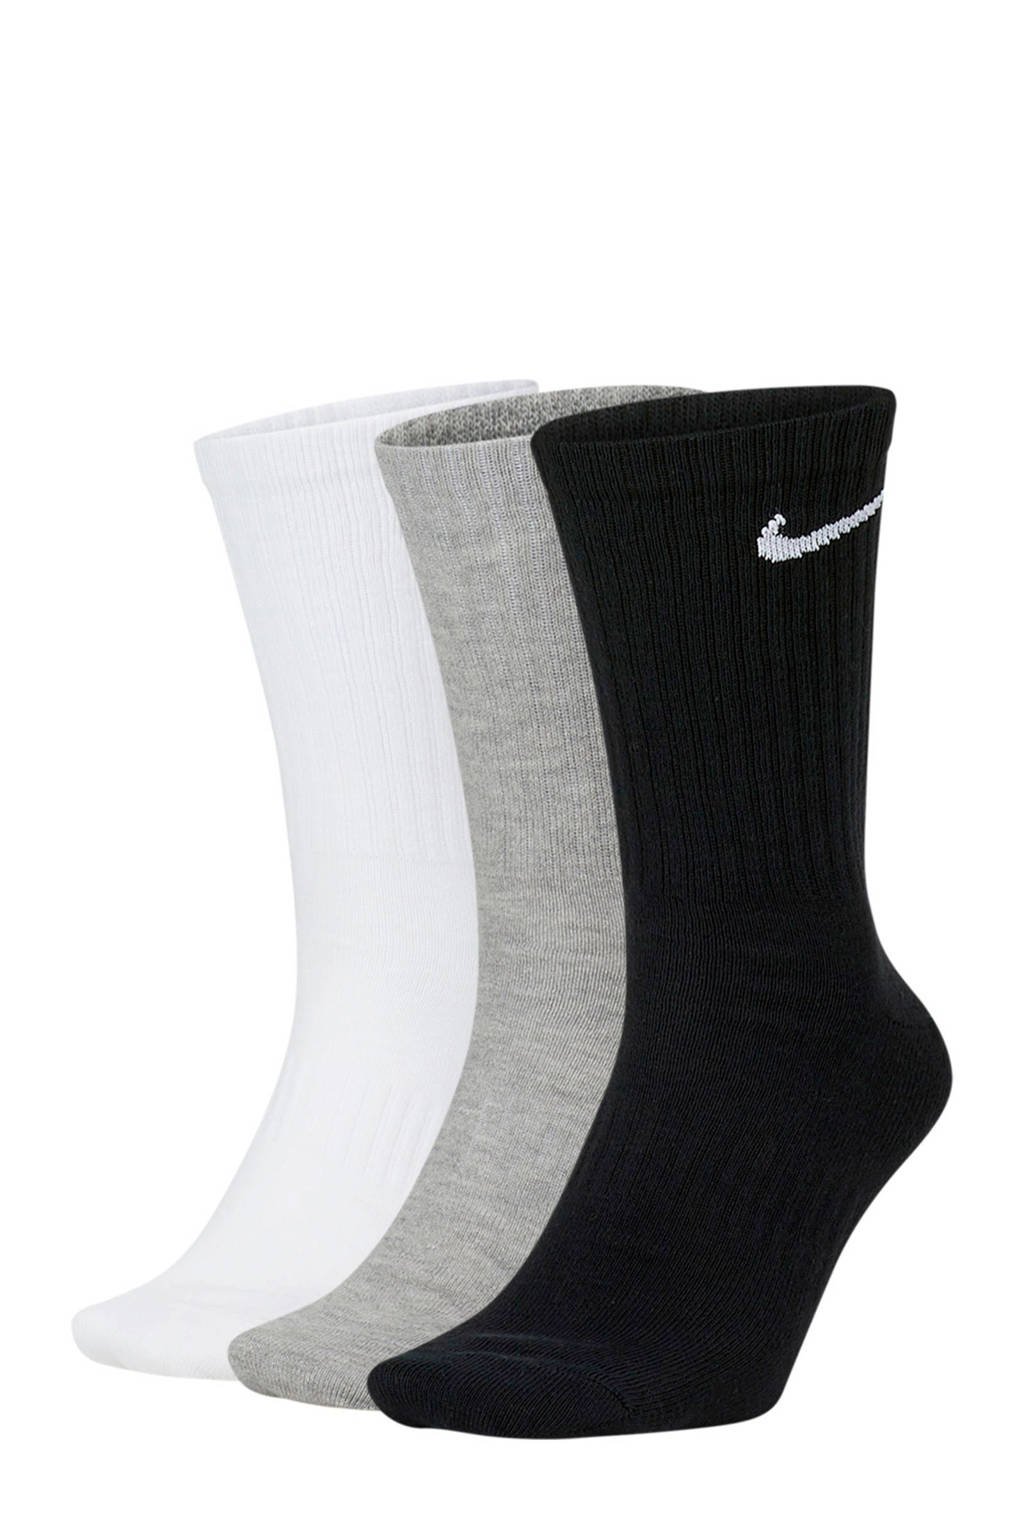 Nike   sportsokken - set van 3 zwart/grijs/wit, Zwart/grijs/wit